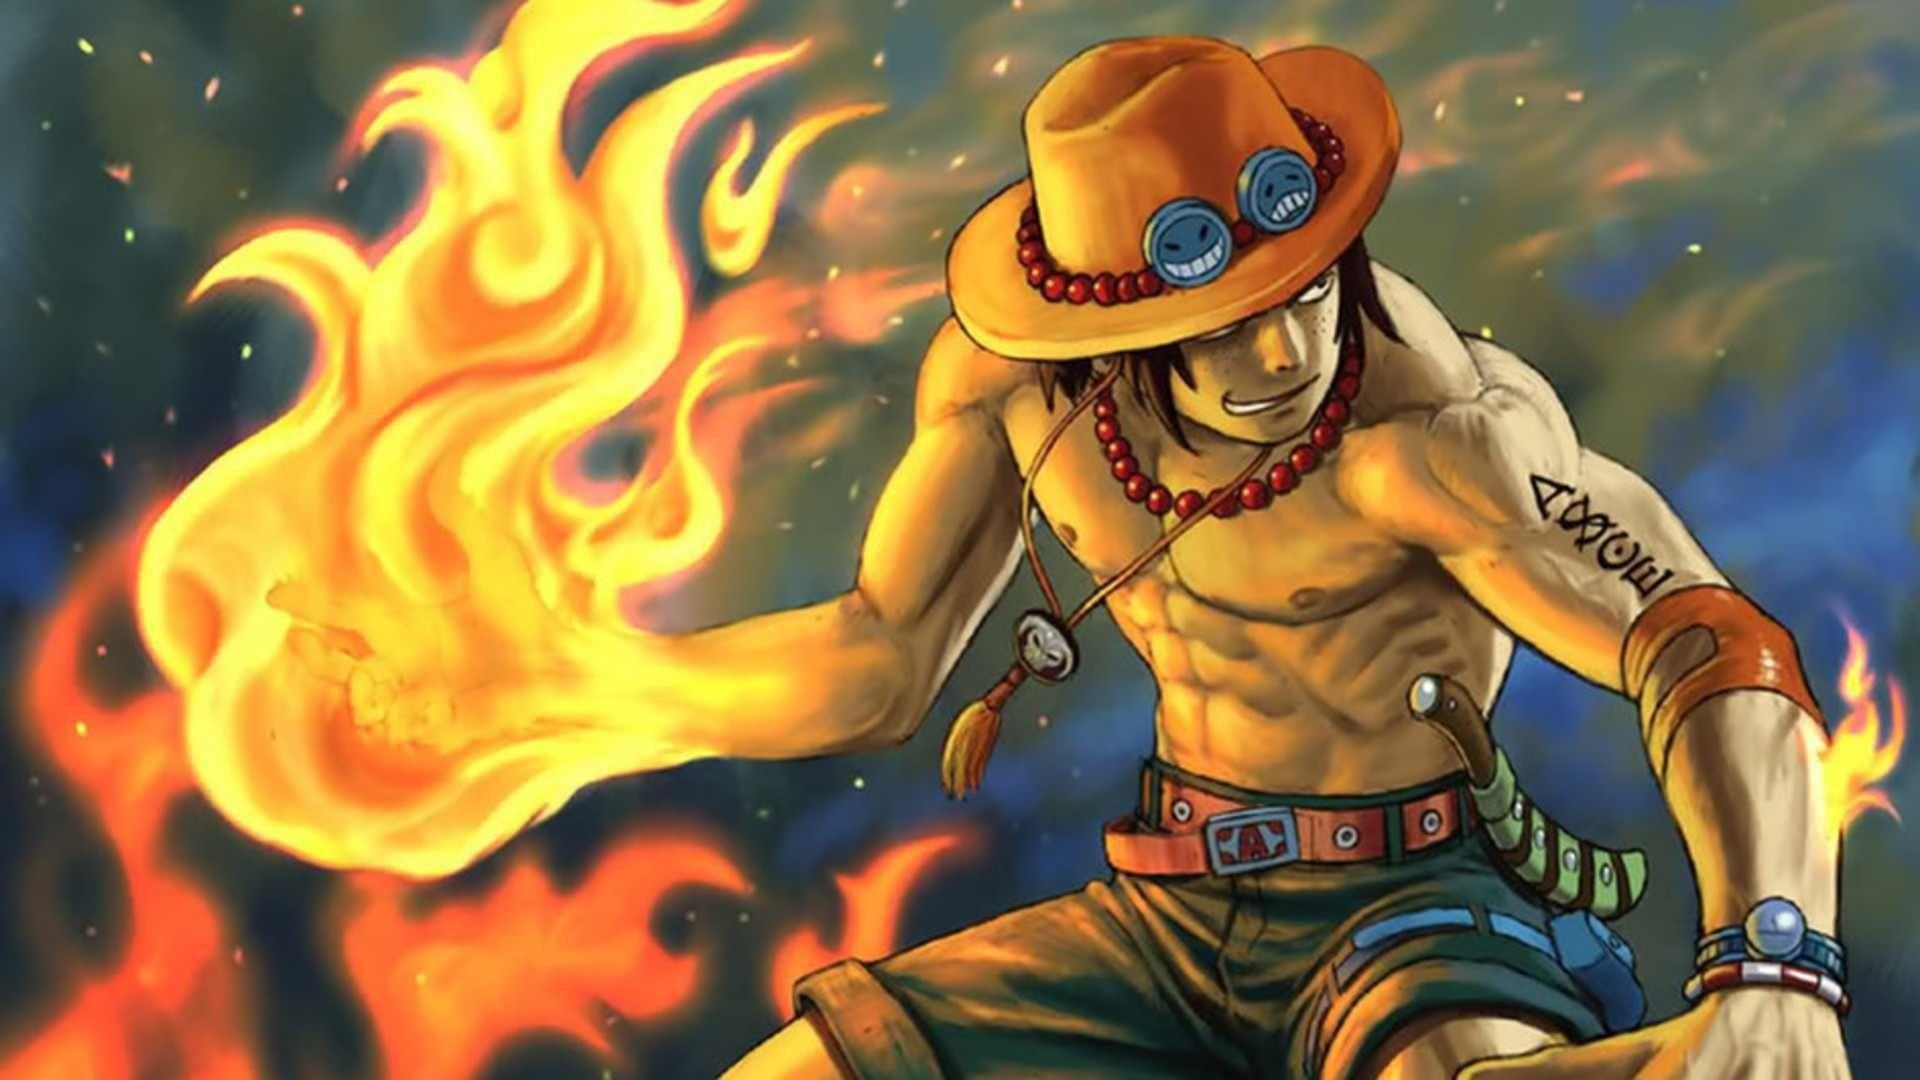 Ace One Piece wallpaper sẽ khiến bạn cảm thấy như đang được ngắm nhìn người hùng của chính mình. Nhân vật Ace đầy quyết tâm, can đảm và tình cảm luôn là người bạn đồng hành bên cạnh Luffy và các bạn hải tặc đầy sức mạnh.